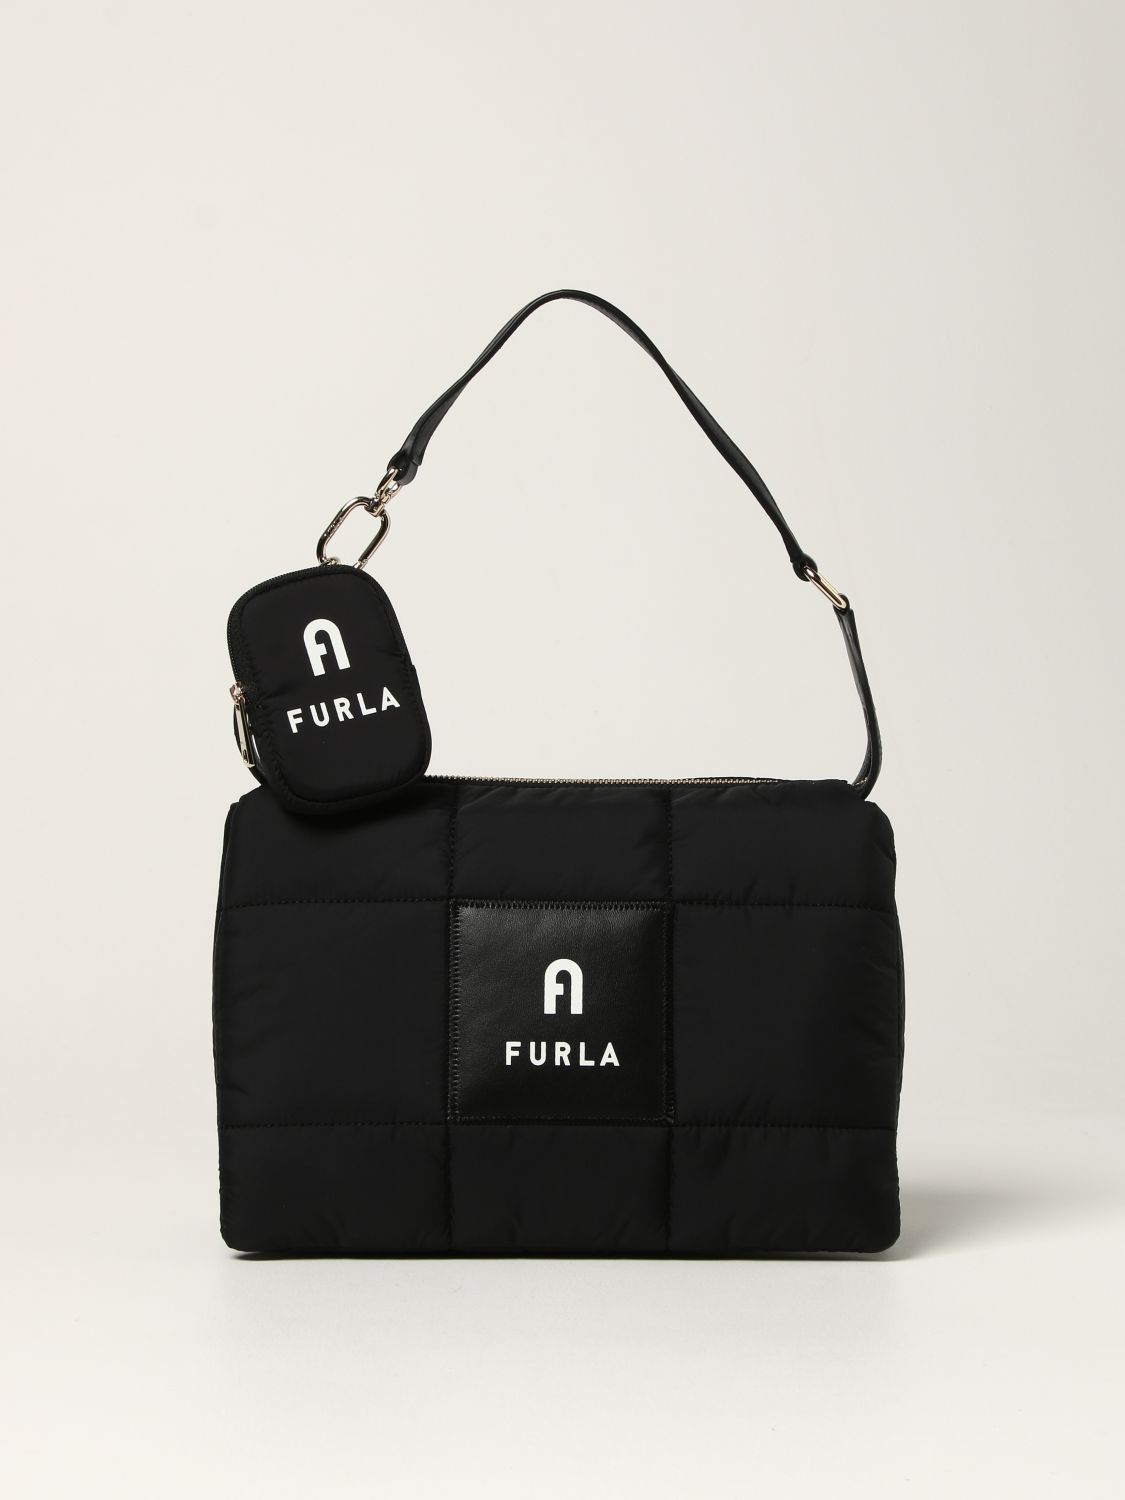 FURLA Bicolor Shoulder Bag BlackWhite  PLAYFUL